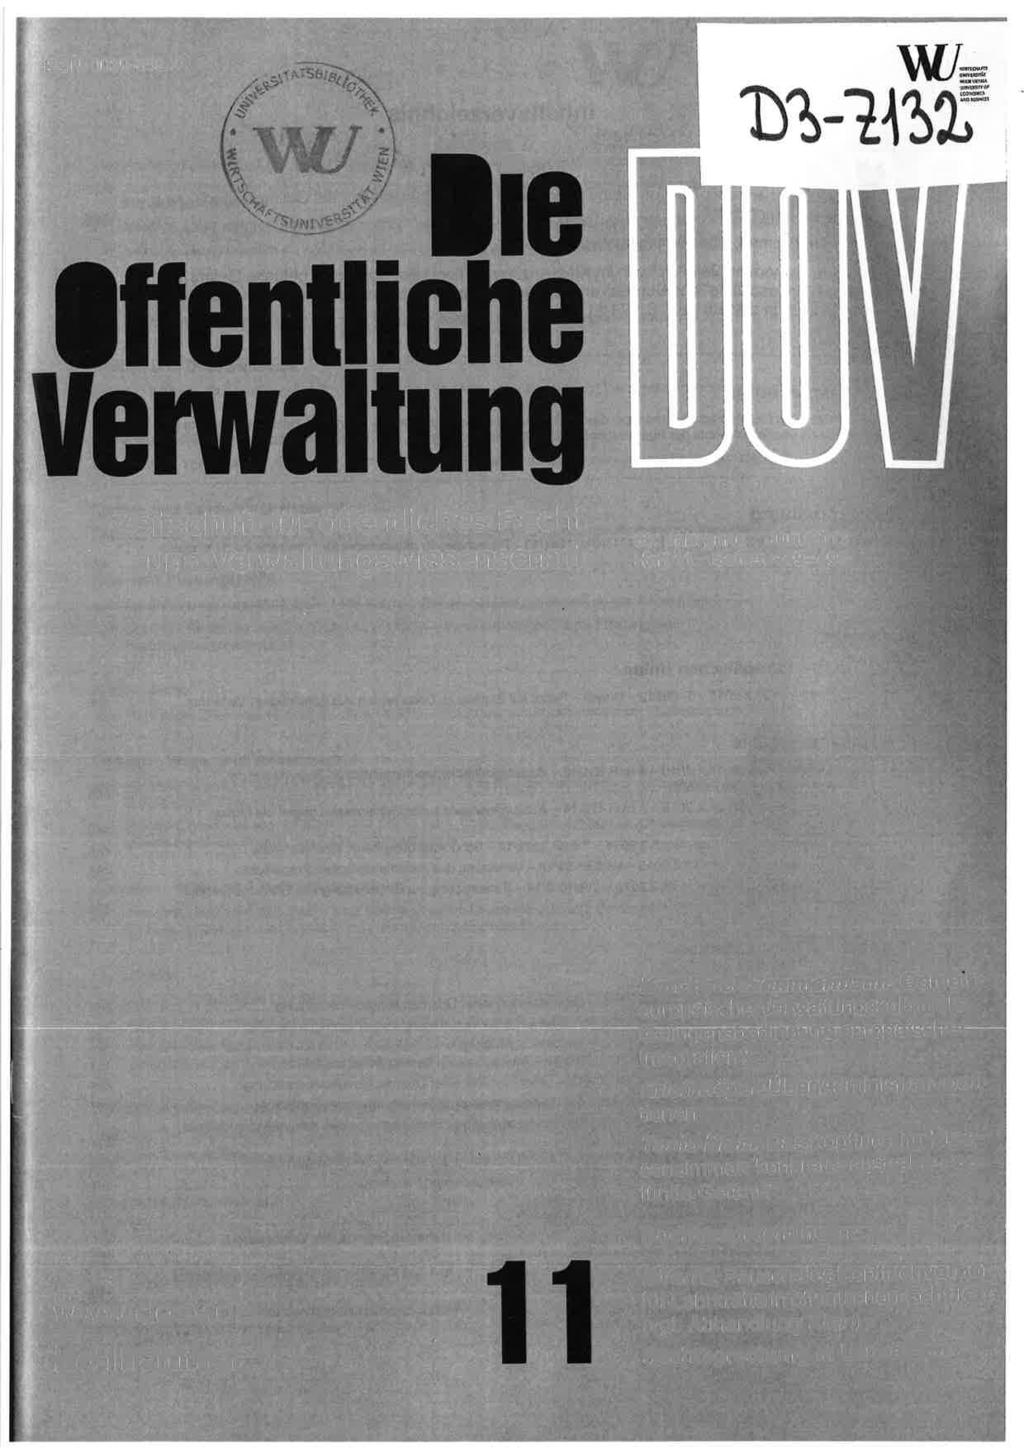 tssn 0029-859 X I TT Zeitschrift fur öffentliches Recht u nd Verwltu ngswissenschft 68.